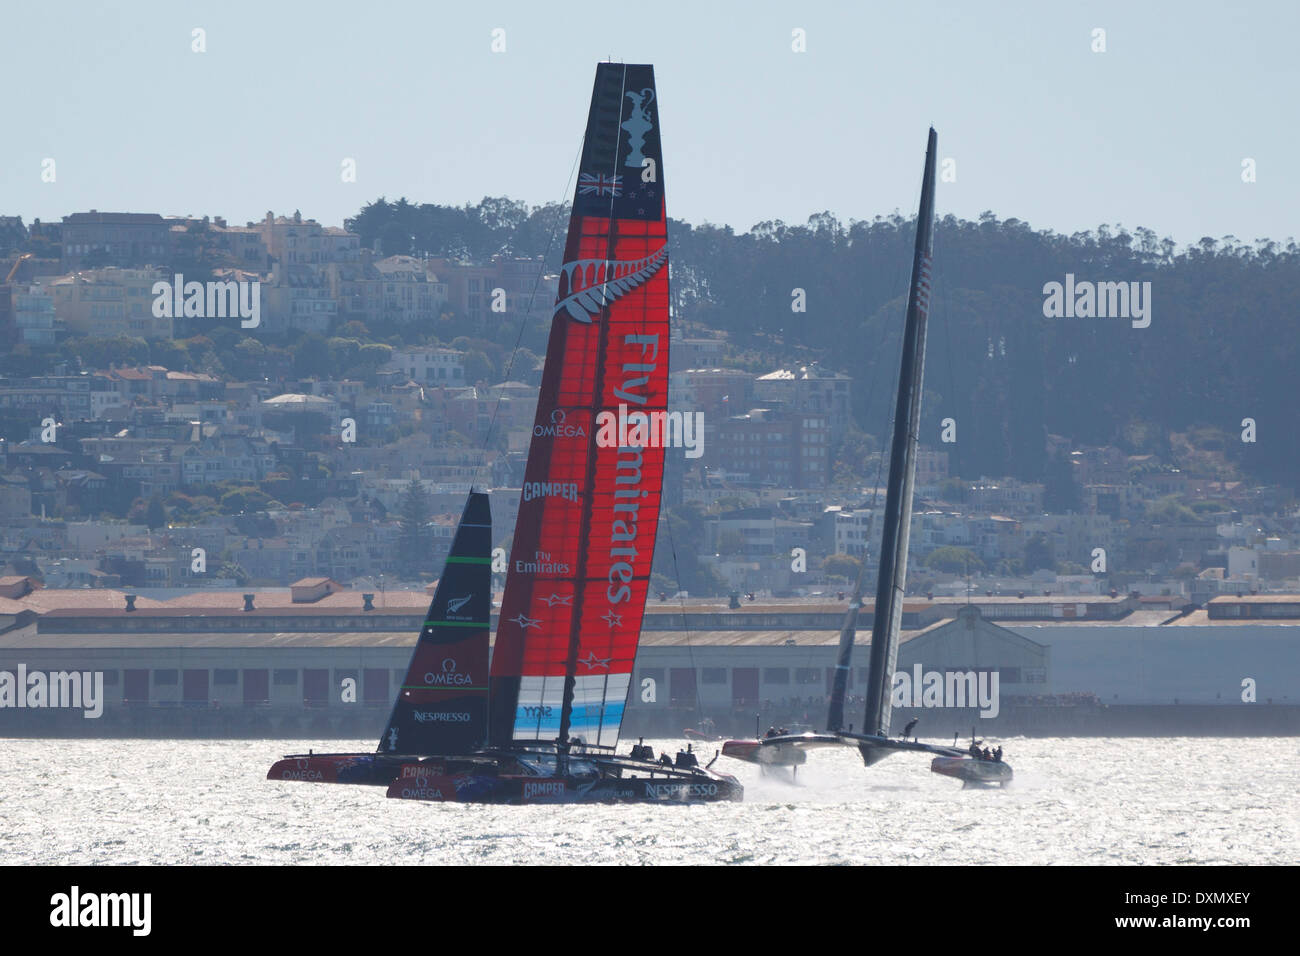 L'équipe Oracle USA skippé par James Spithill et Emirates Team New Zealand skippé par Dean Barker navigue dans la baie de San Francisco au cours de l'America's Cup 2013 San Francisco, Californie. Banque D'Images